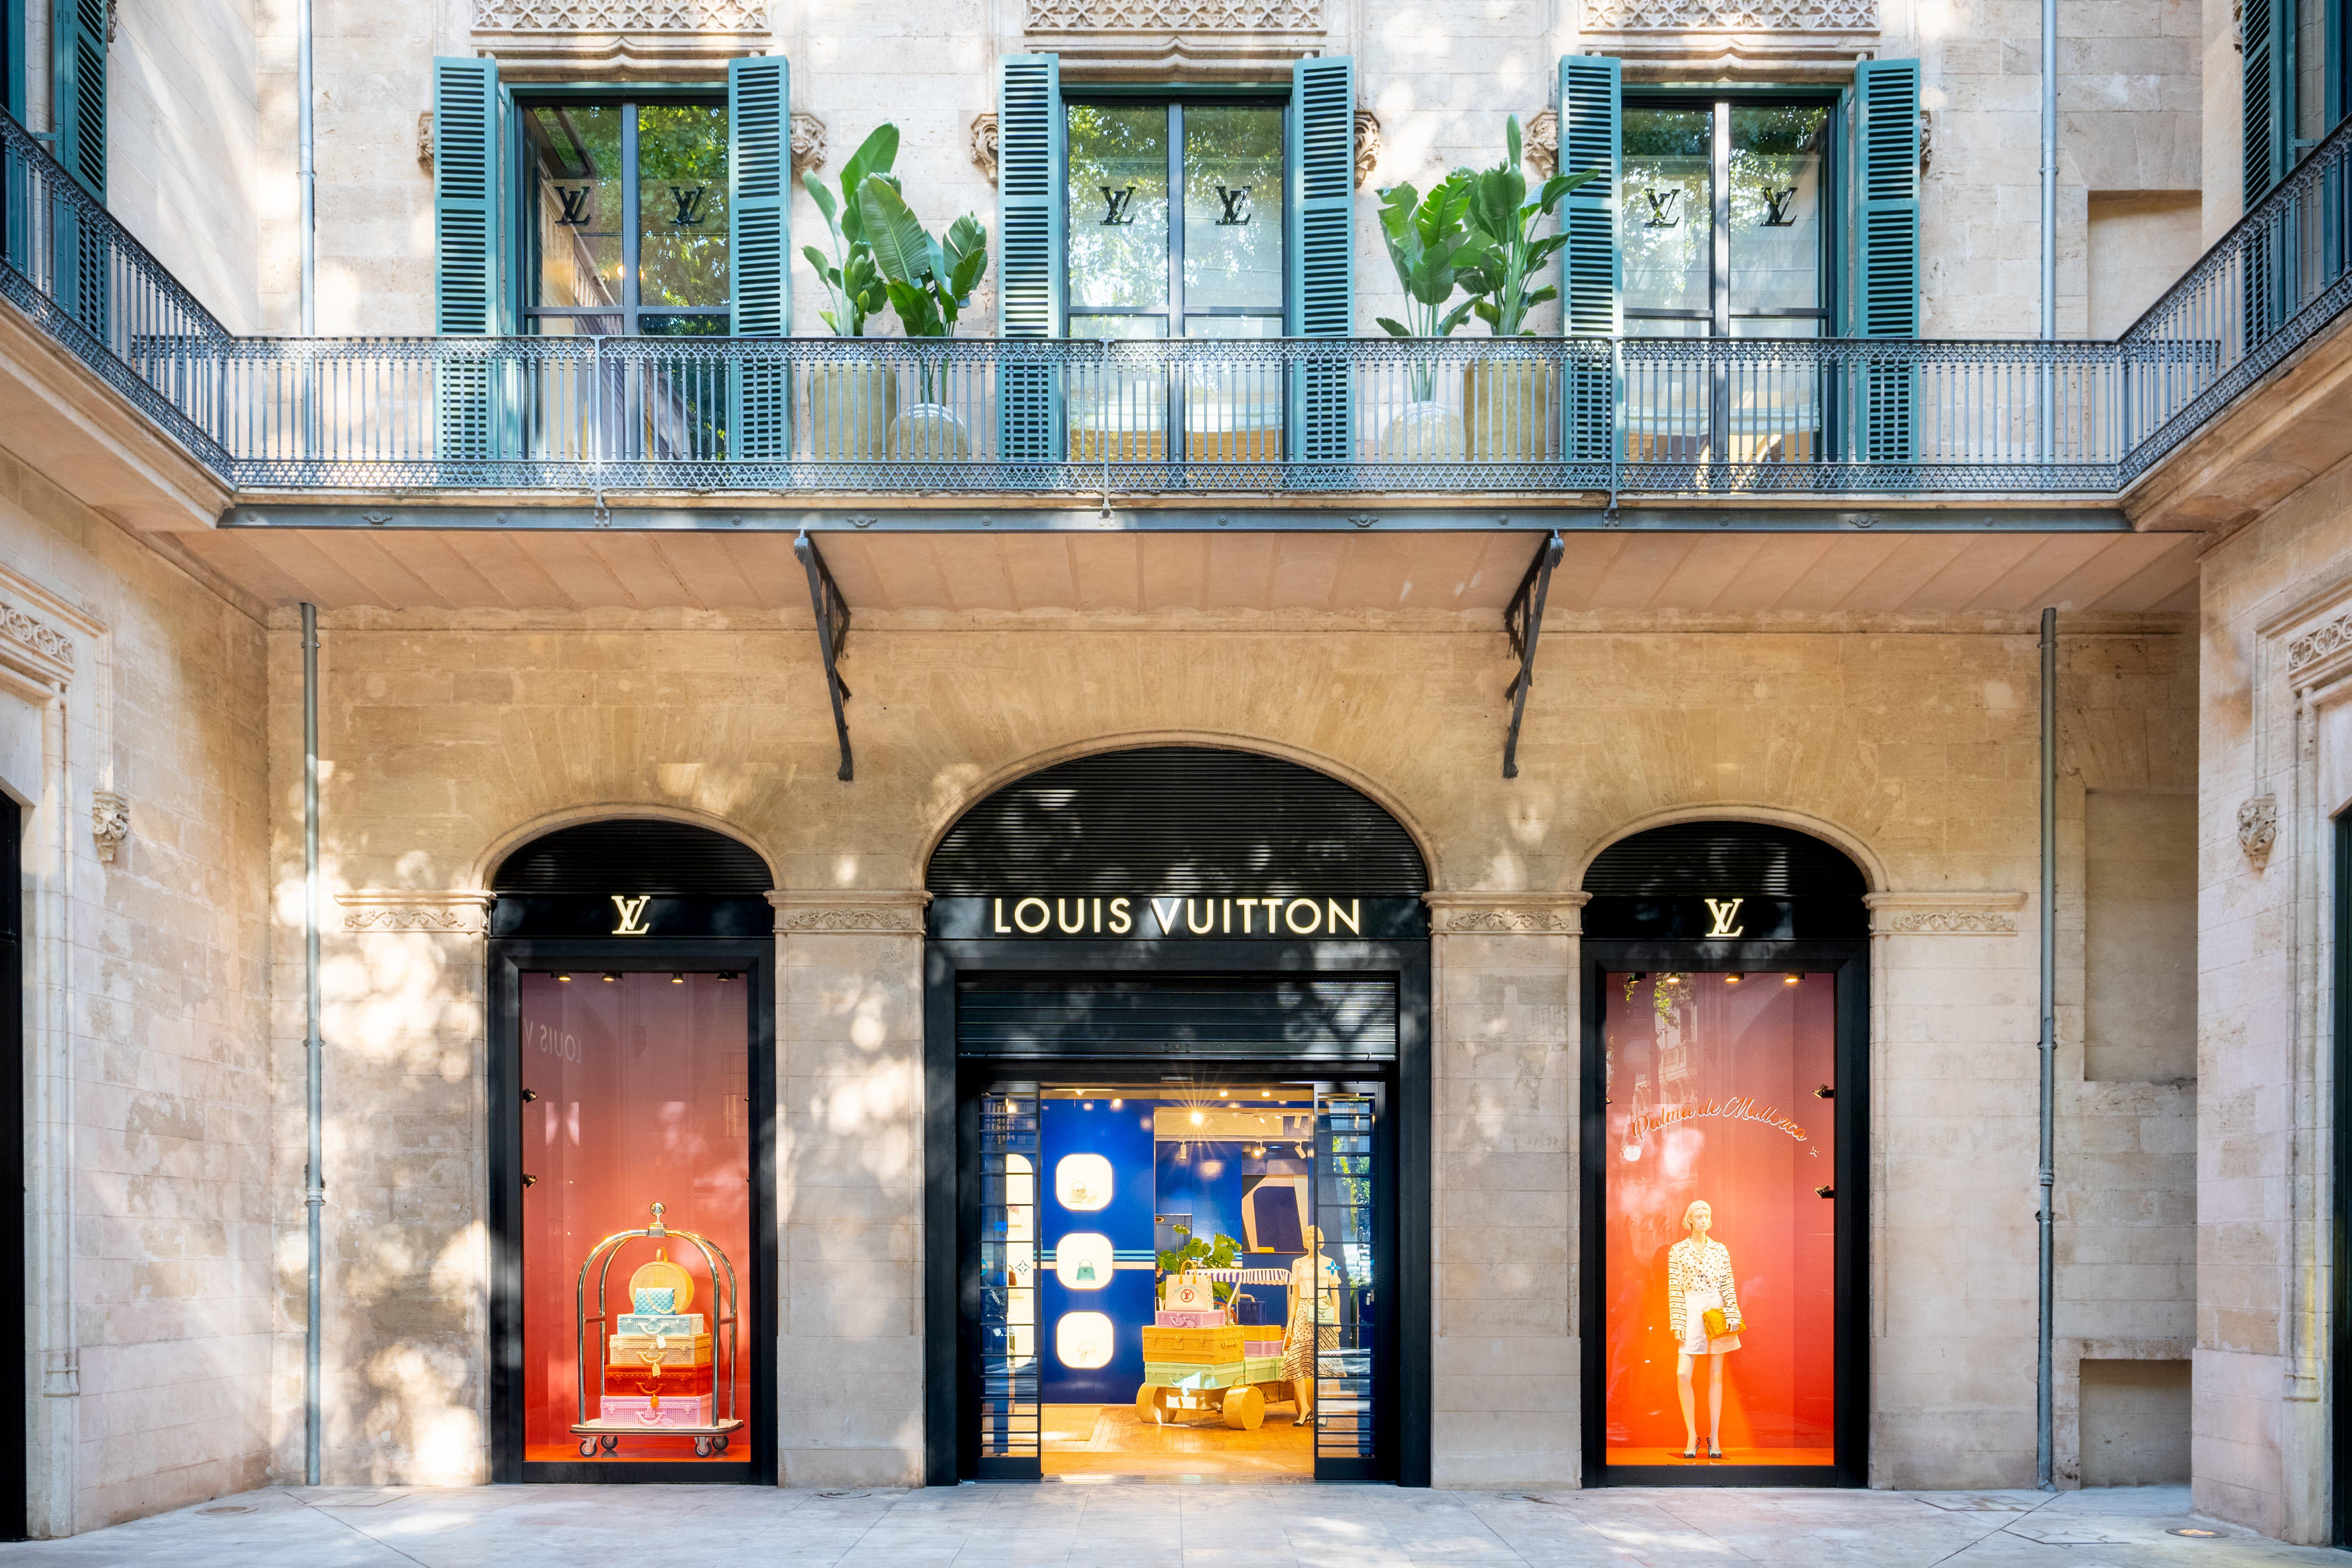 Images Louis Vuitton Palma De Mallorca